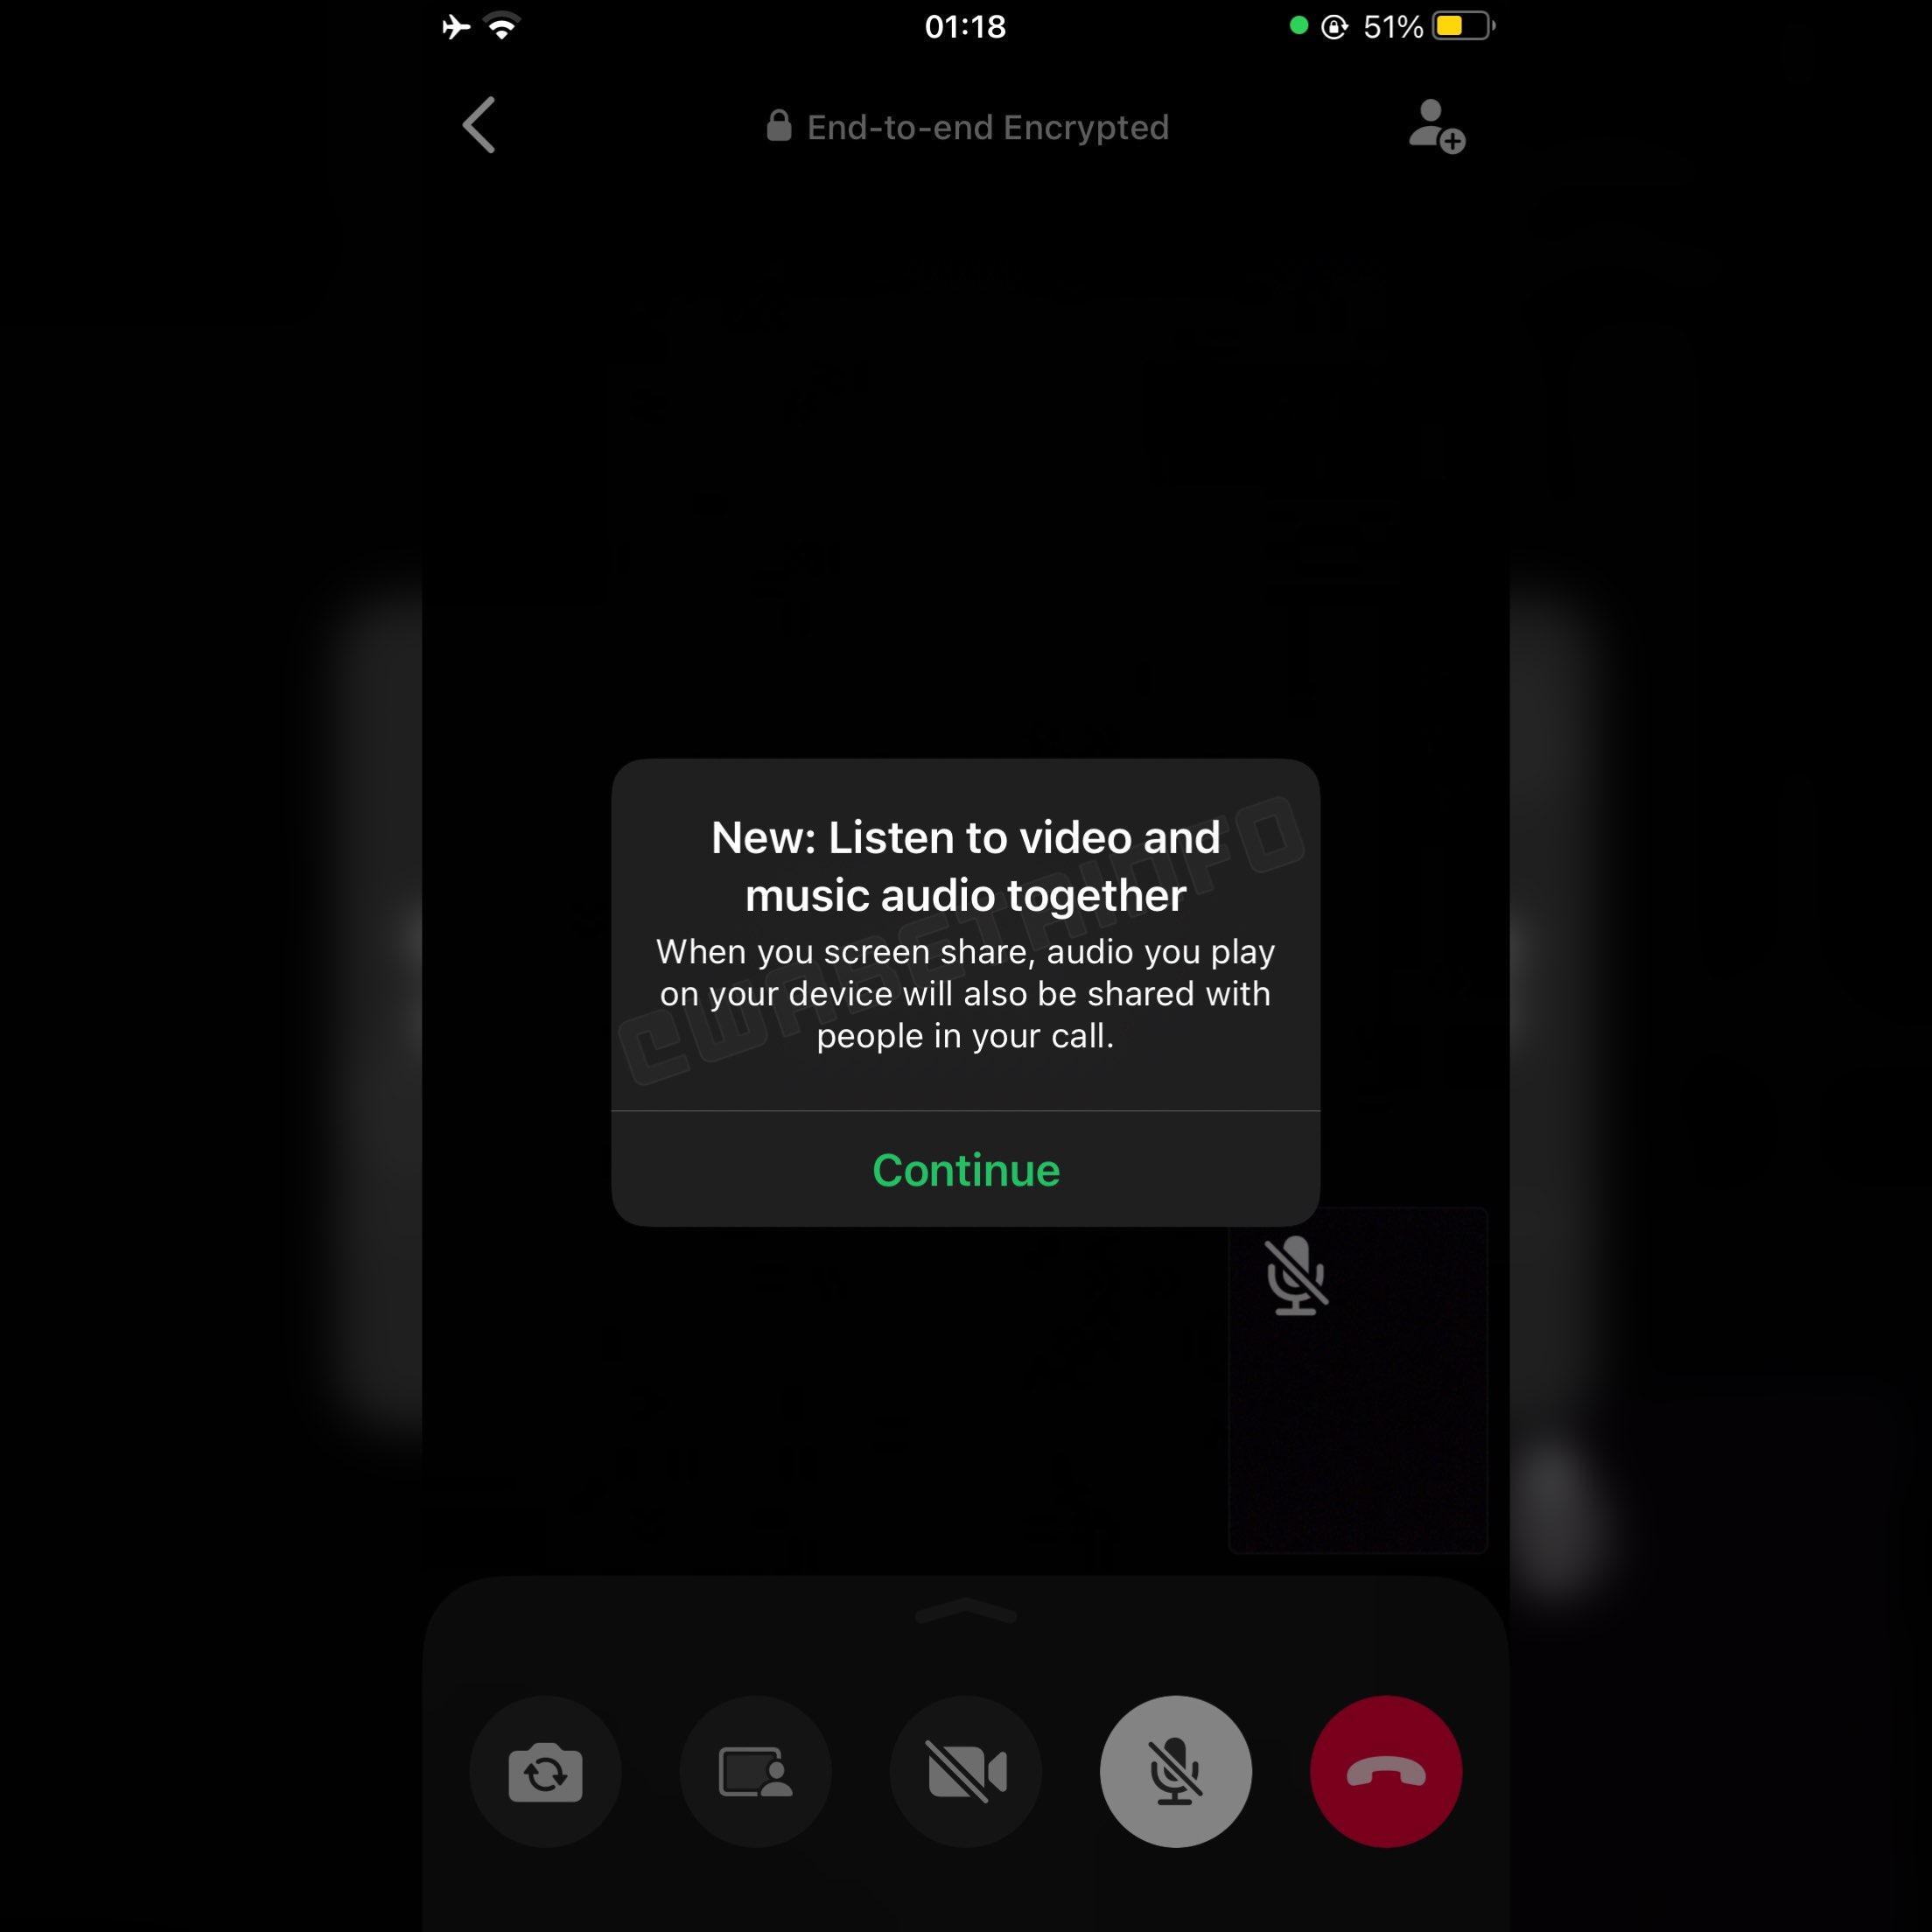 WhatsApp está trabajando en una función para compartir audio musical durante una videollamada y estará disponible en una actualización futura.